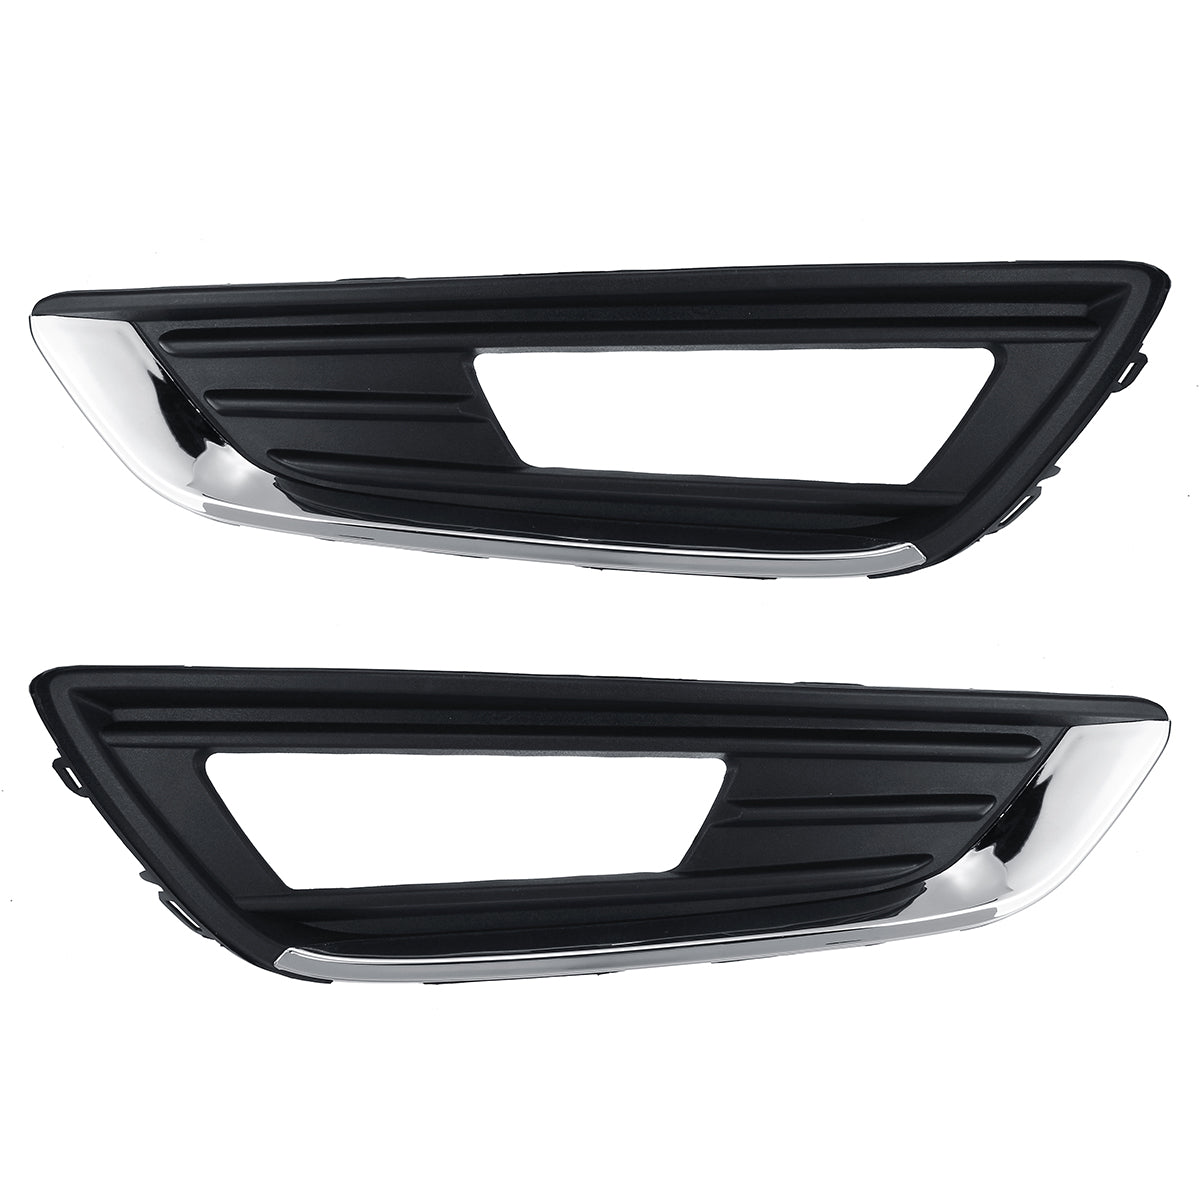 Black Car Front Left/Right Fog Lamp Cover For Ford Focus Hatchback Estate 2015-2018